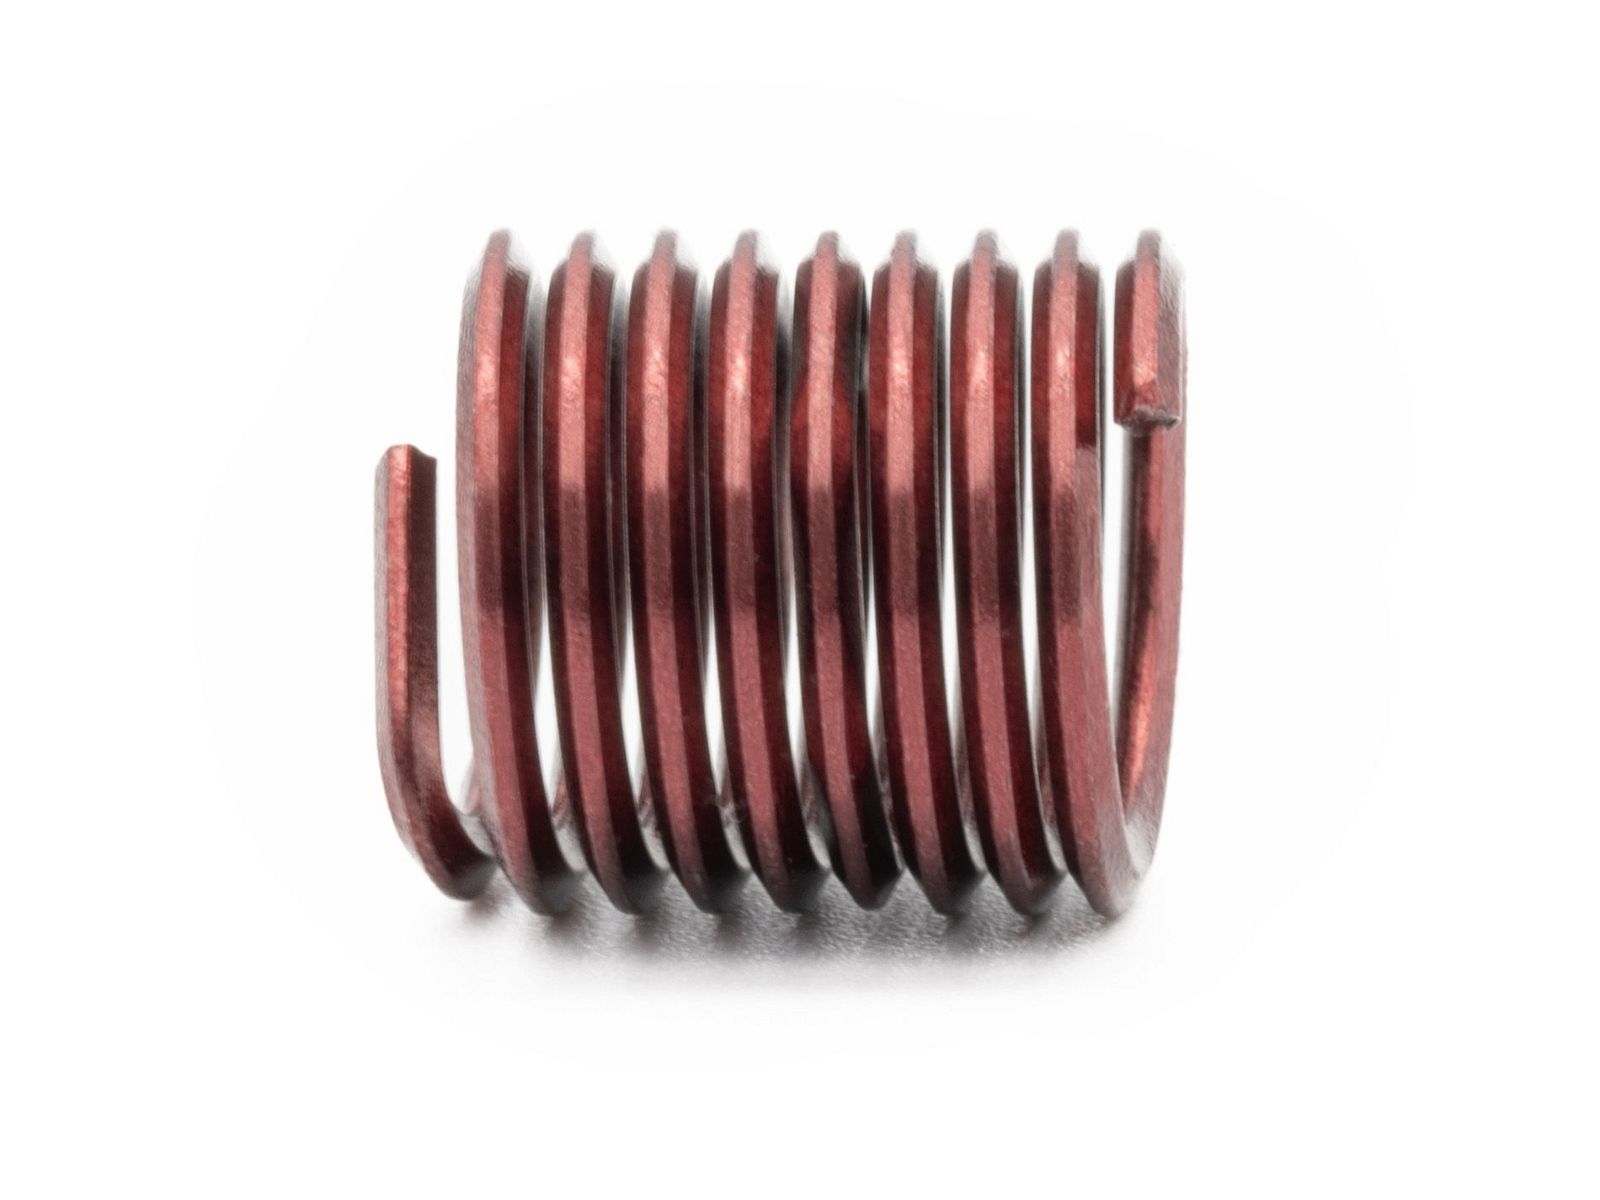 BaerCoil Wire Thread Inserts M 6 x 1.0 - 1.5 D (9 mm) - screw grip (screw locking) - 10 pcs.